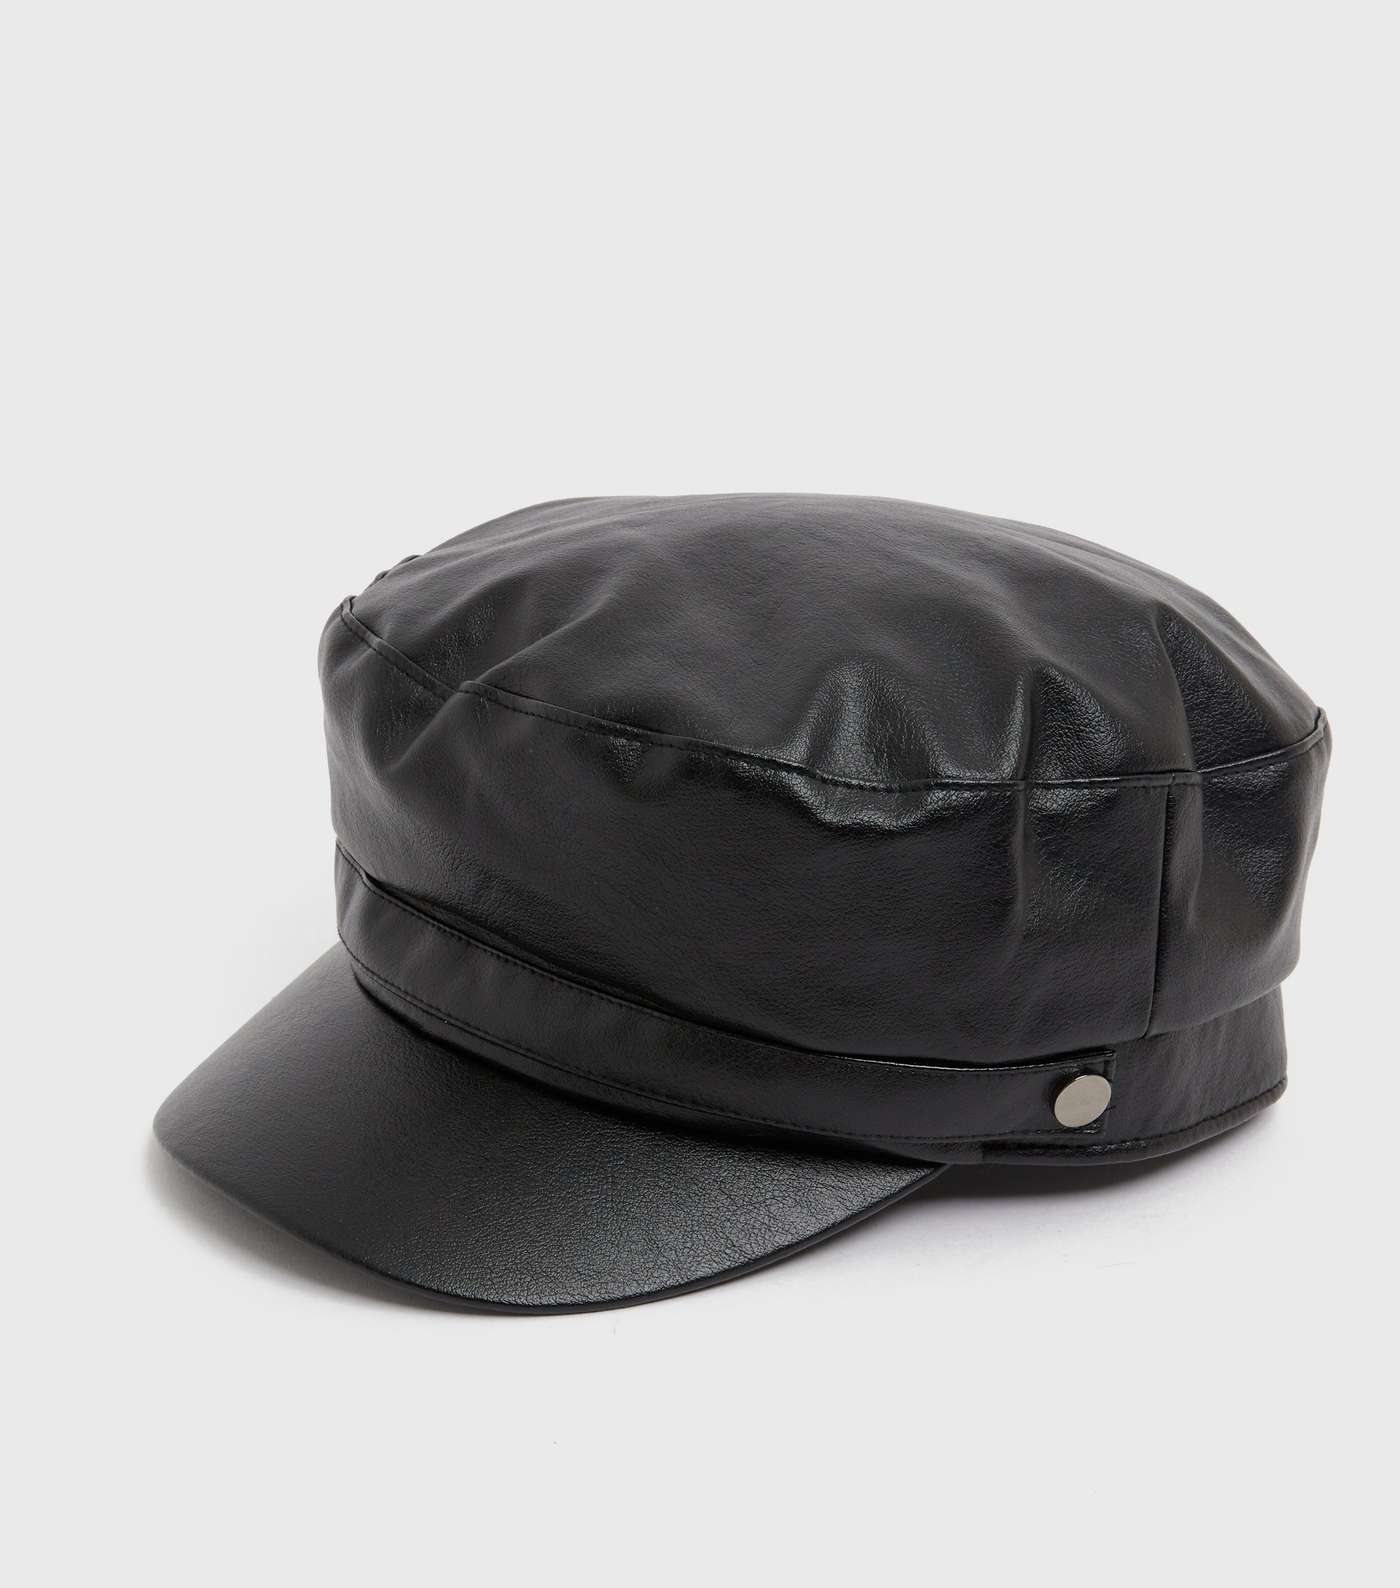 Black Leather-Look Baker Boy Hat Image 2